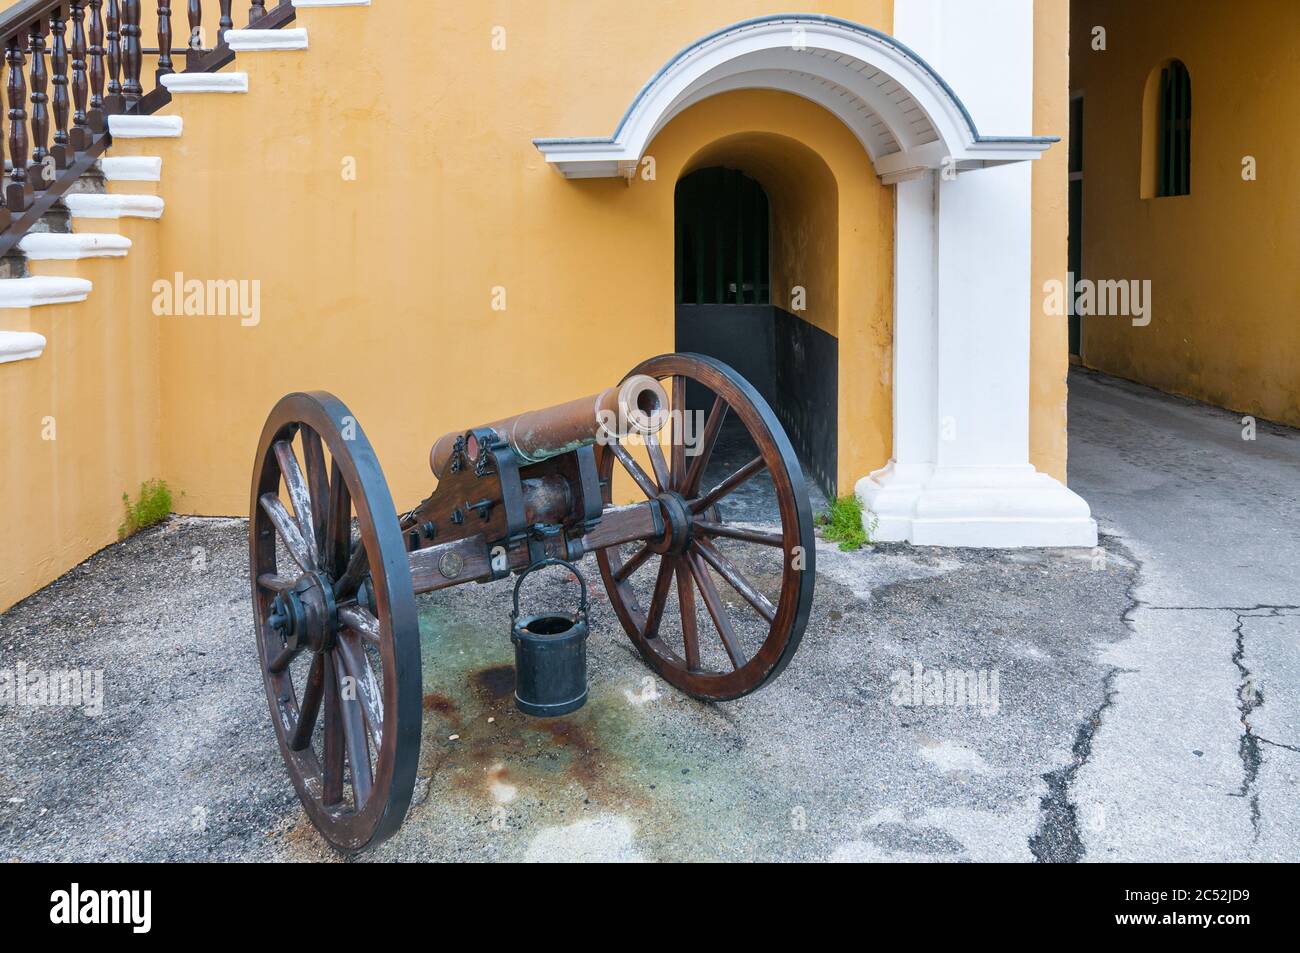 WILLEMSTAD, CURACAO - 22 NOVEMBRE 2008: La pistola a cannone che si trova di fronte a Fort Amsterdam, l'attuale sede del governatore a Willemstad, Curaçao. Foto Stock